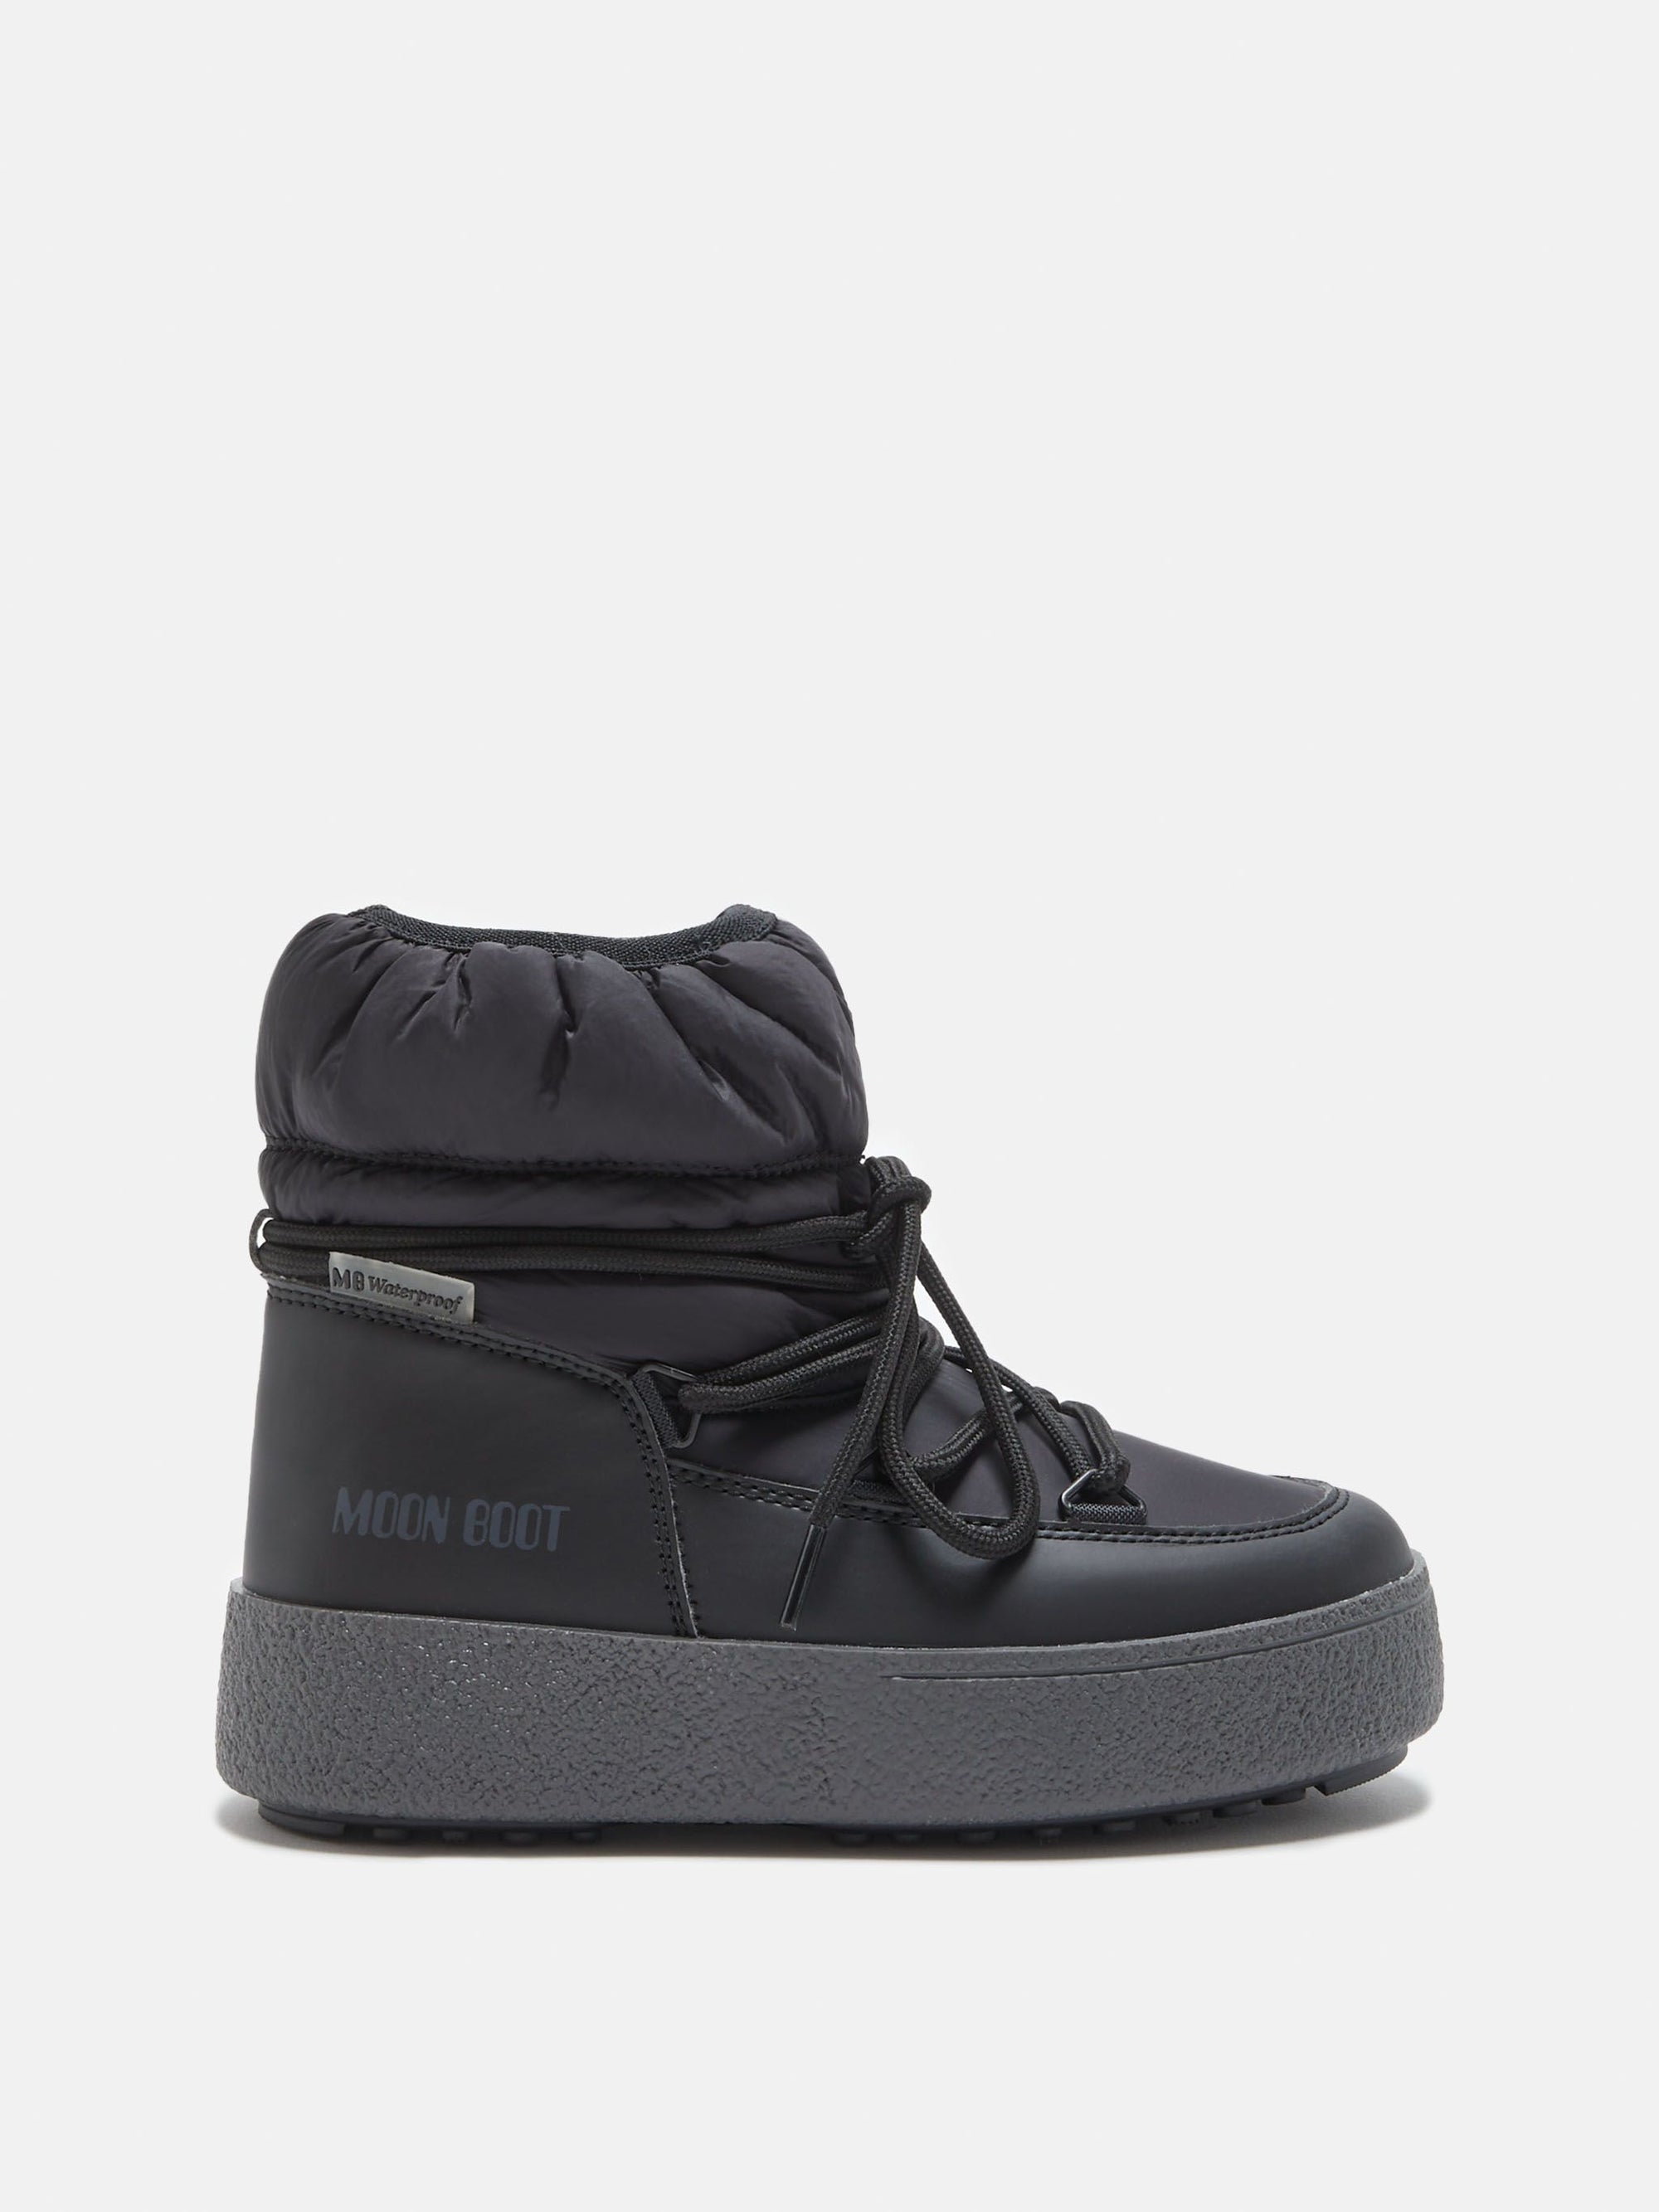 Moon Boot Black Polar-Tassel Children Shoes